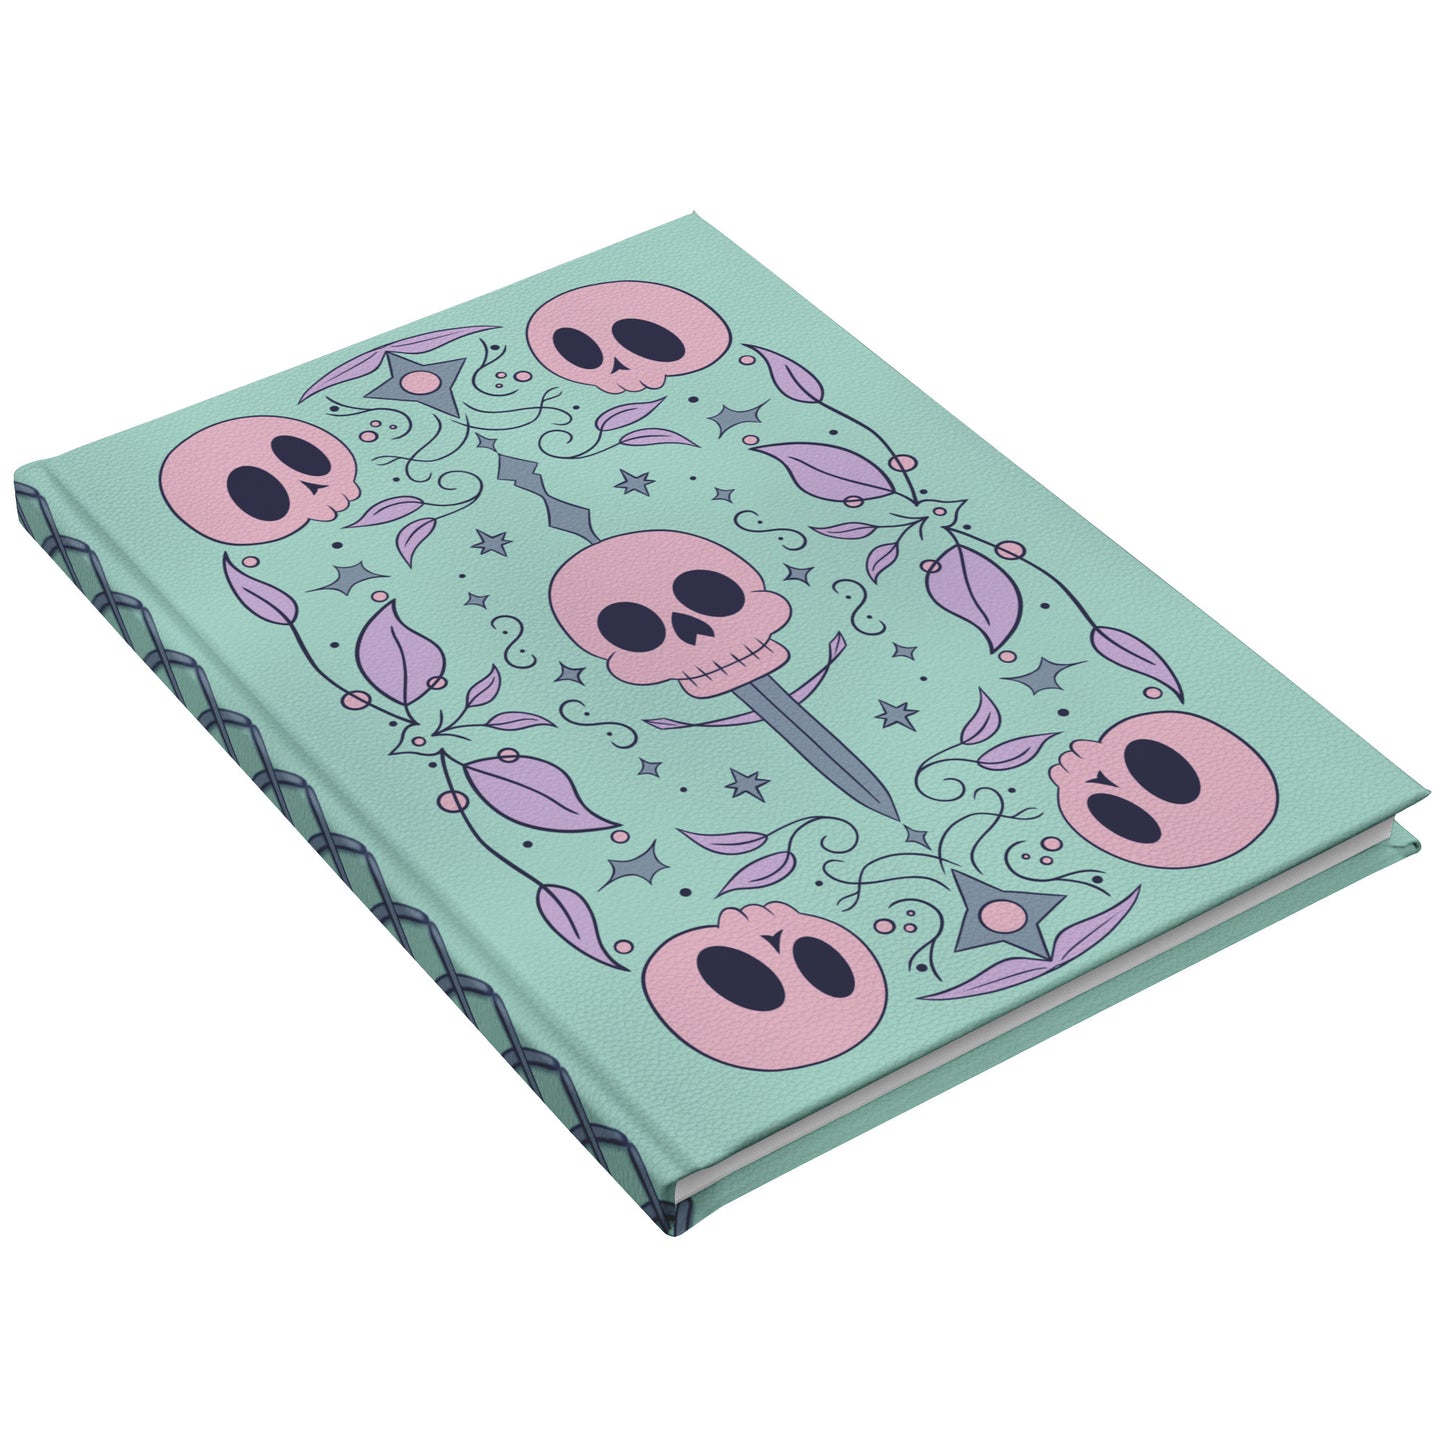 skull notebook